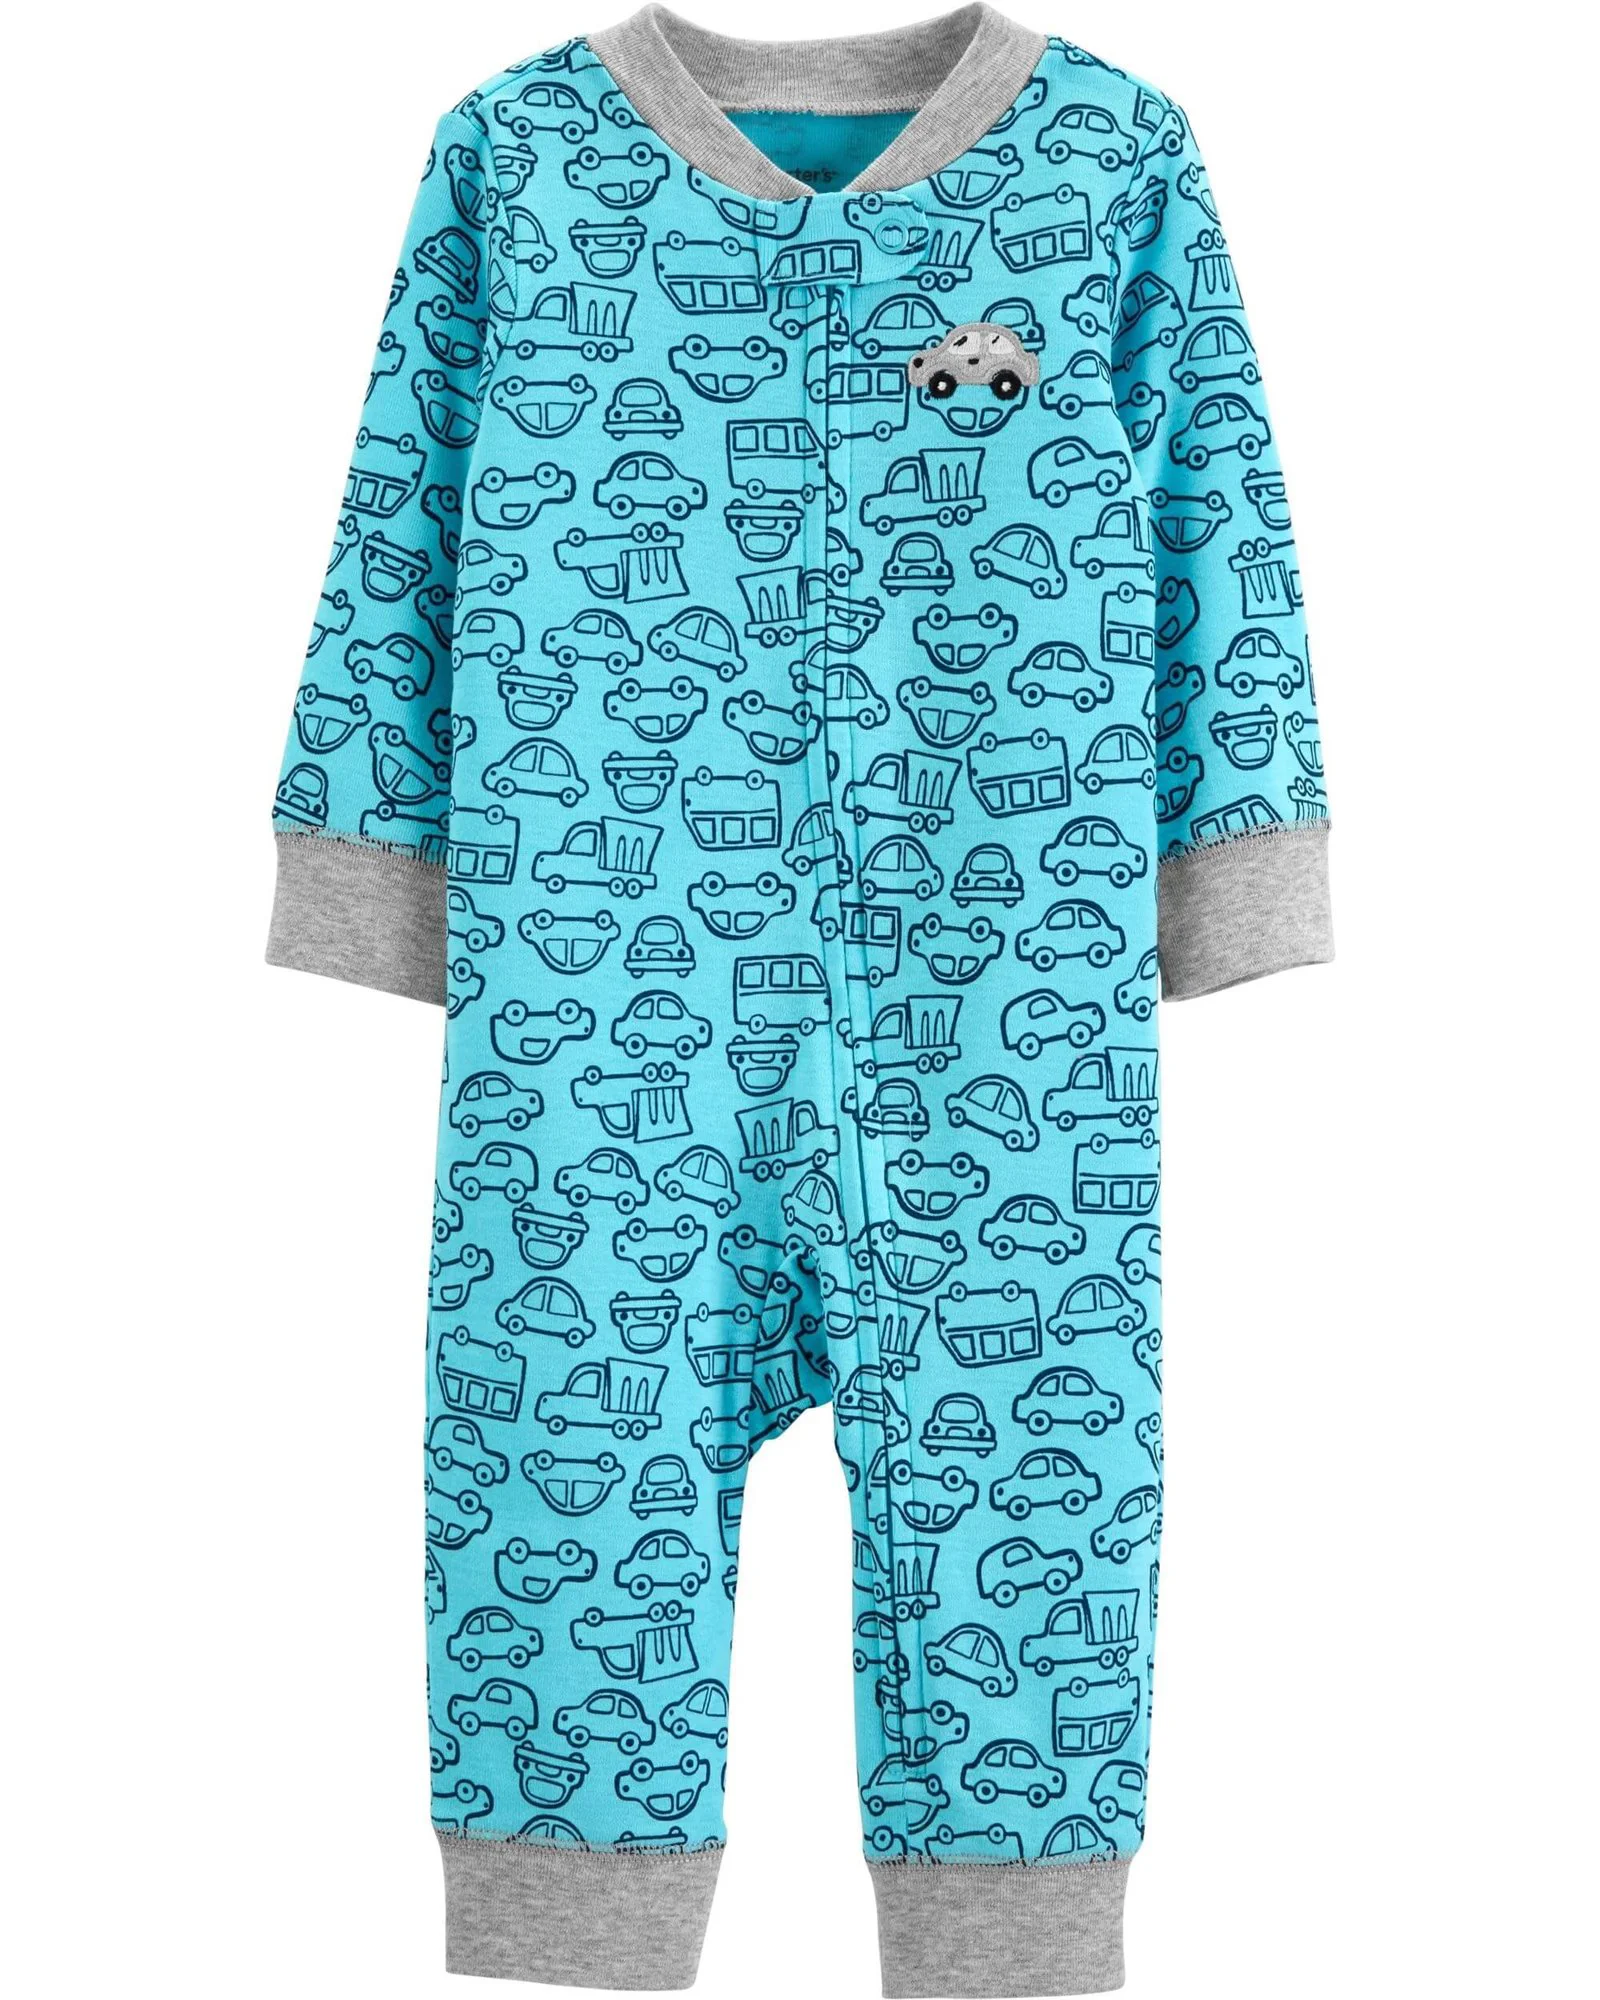 Carter's Pijama bebelus Masinuta